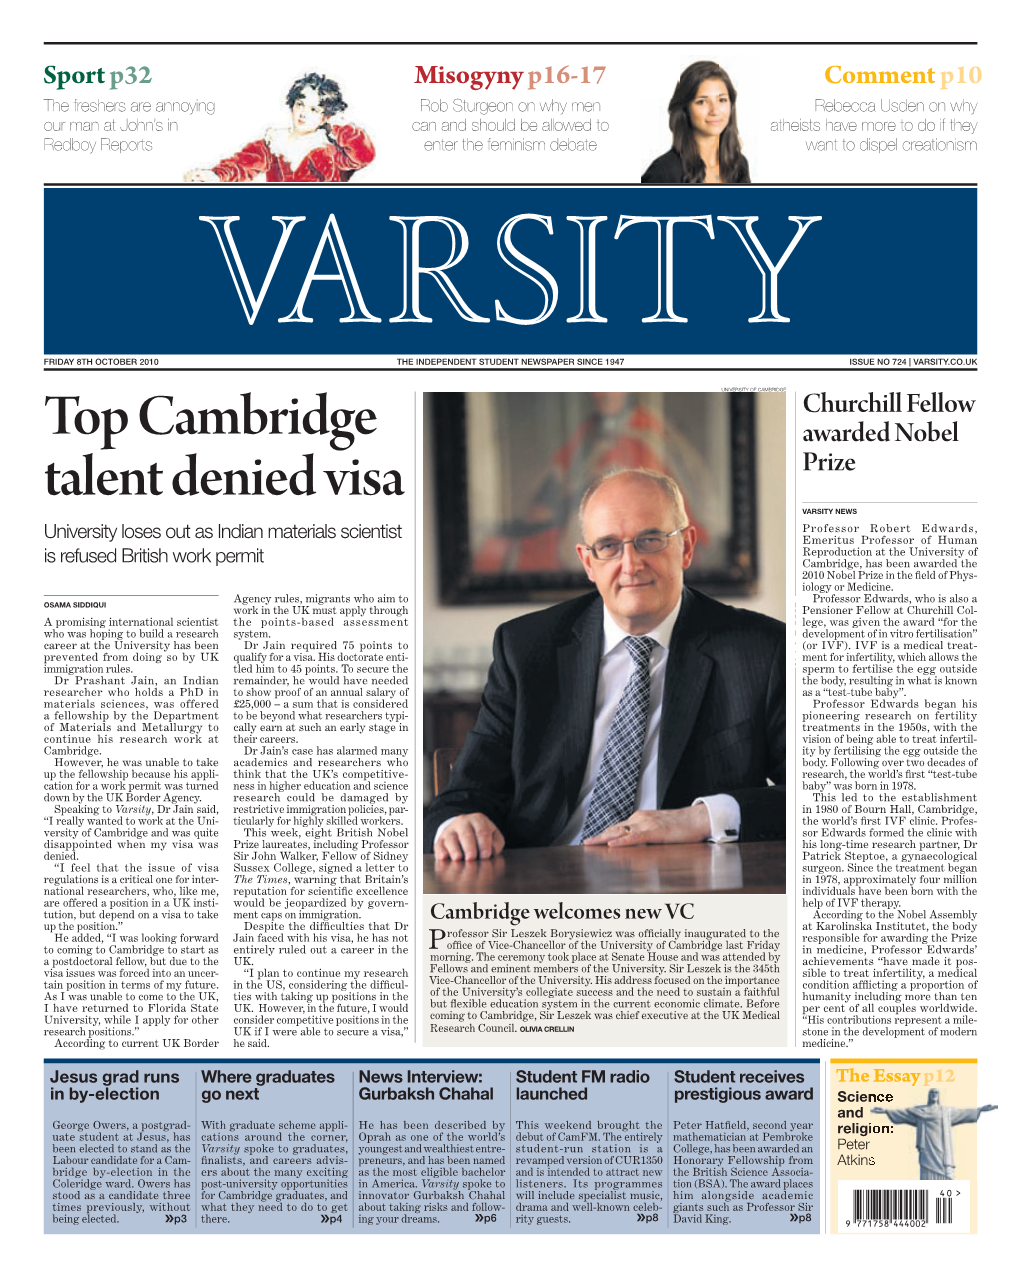 Top Cambridge Talent Denied Visa